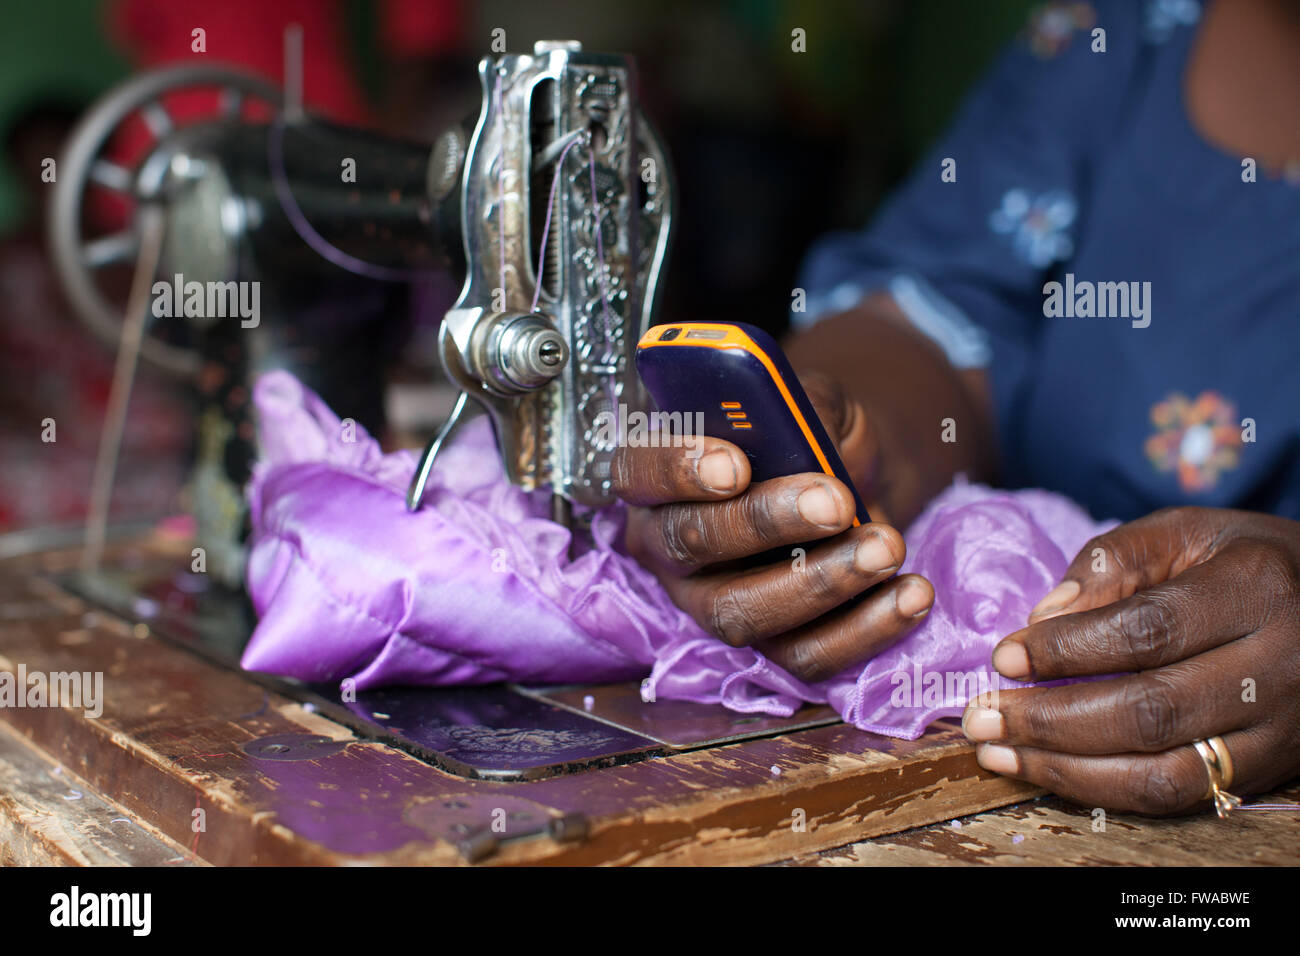 Una vestimenta femenina Maker usando una máquina de coser y un teléfono móvil, Nigeria, África Foto de stock